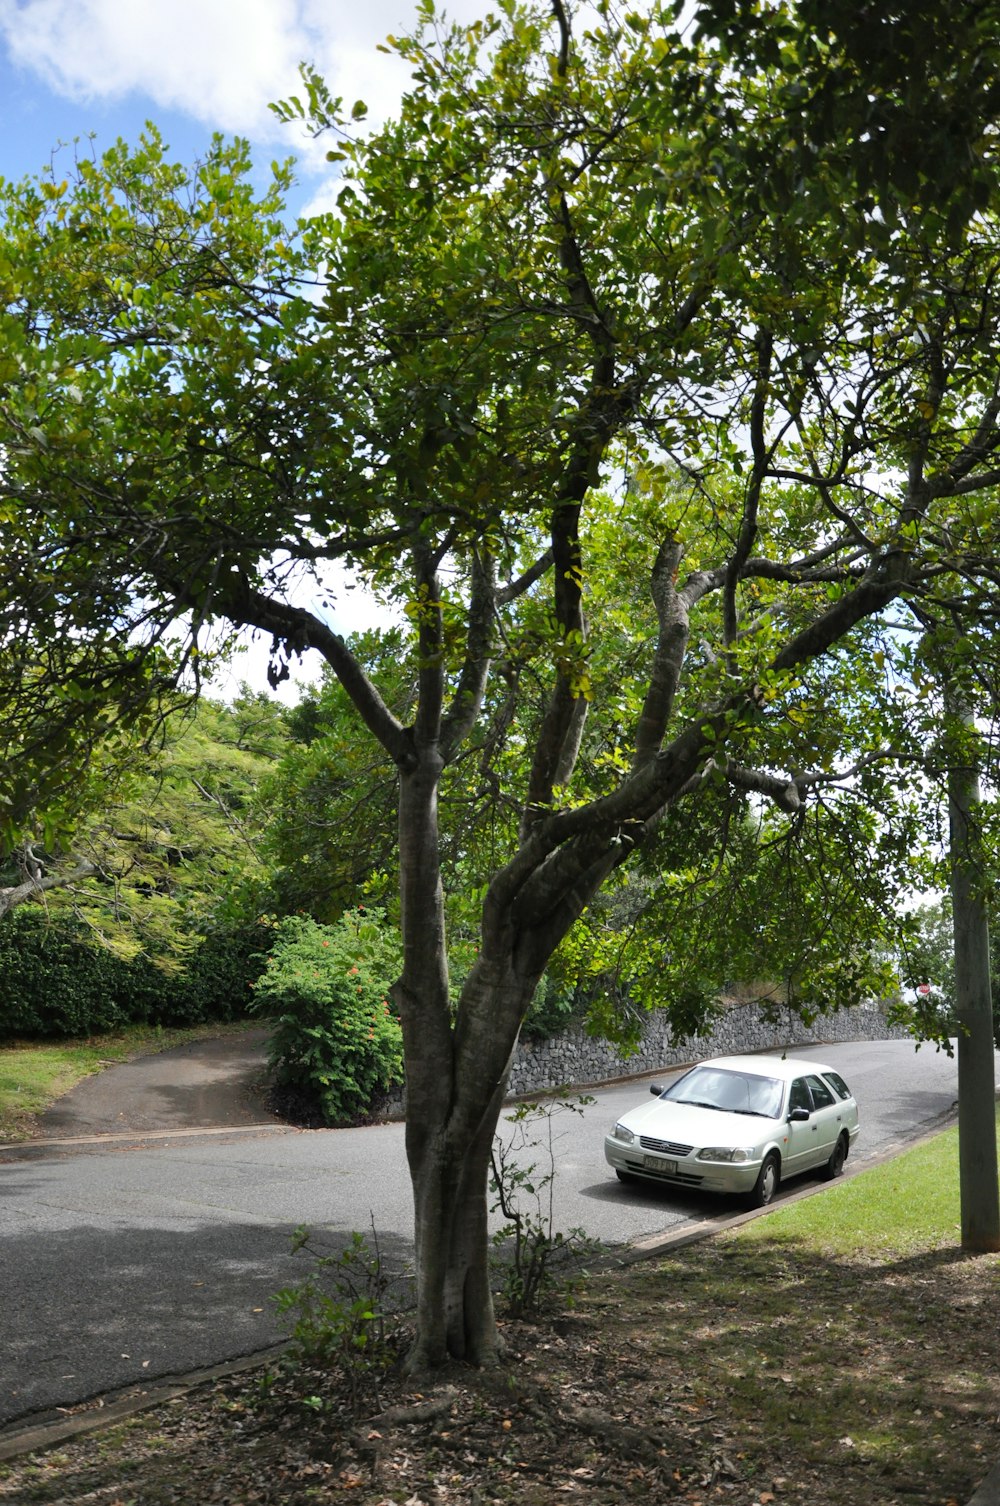 Coche blanco aparcado al borde de la carretera cerca de árboles verdes durante el día